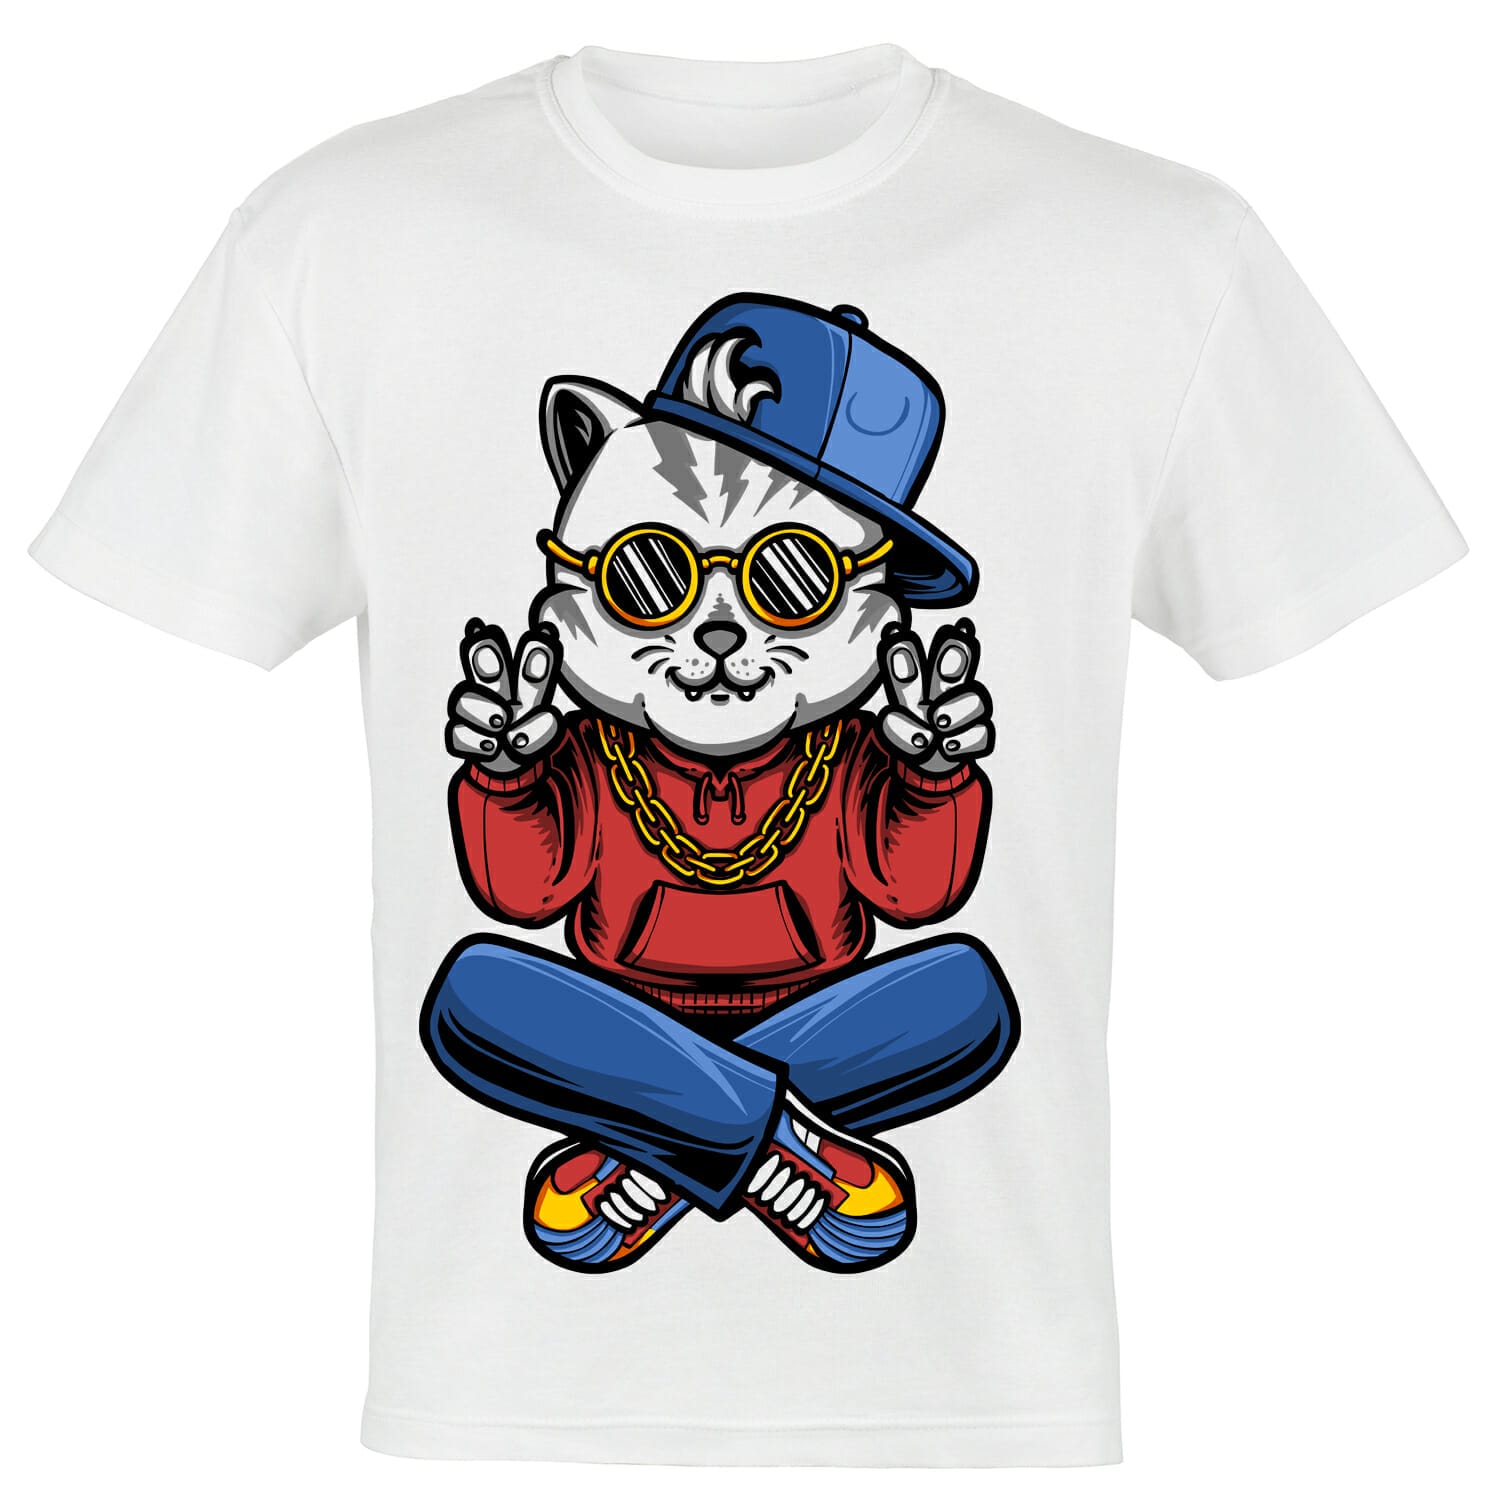 Rockstar cat tshirt design